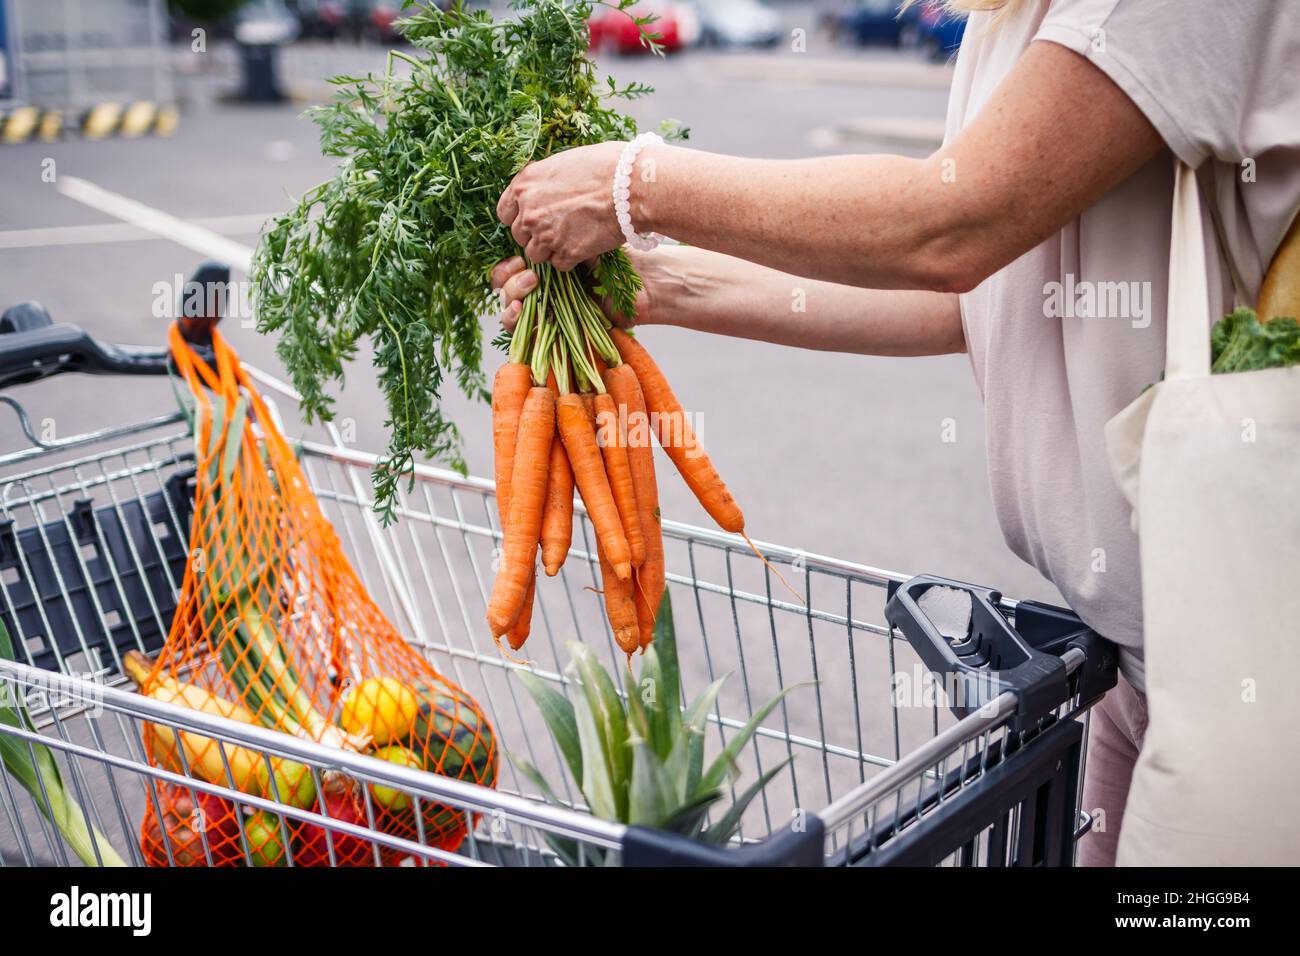 Achats gratuits en plastique.Femme ramassant des carottes dans le parking du cartat.Sac en maille réutilisable.Concept zéro déchet Banque D'Images